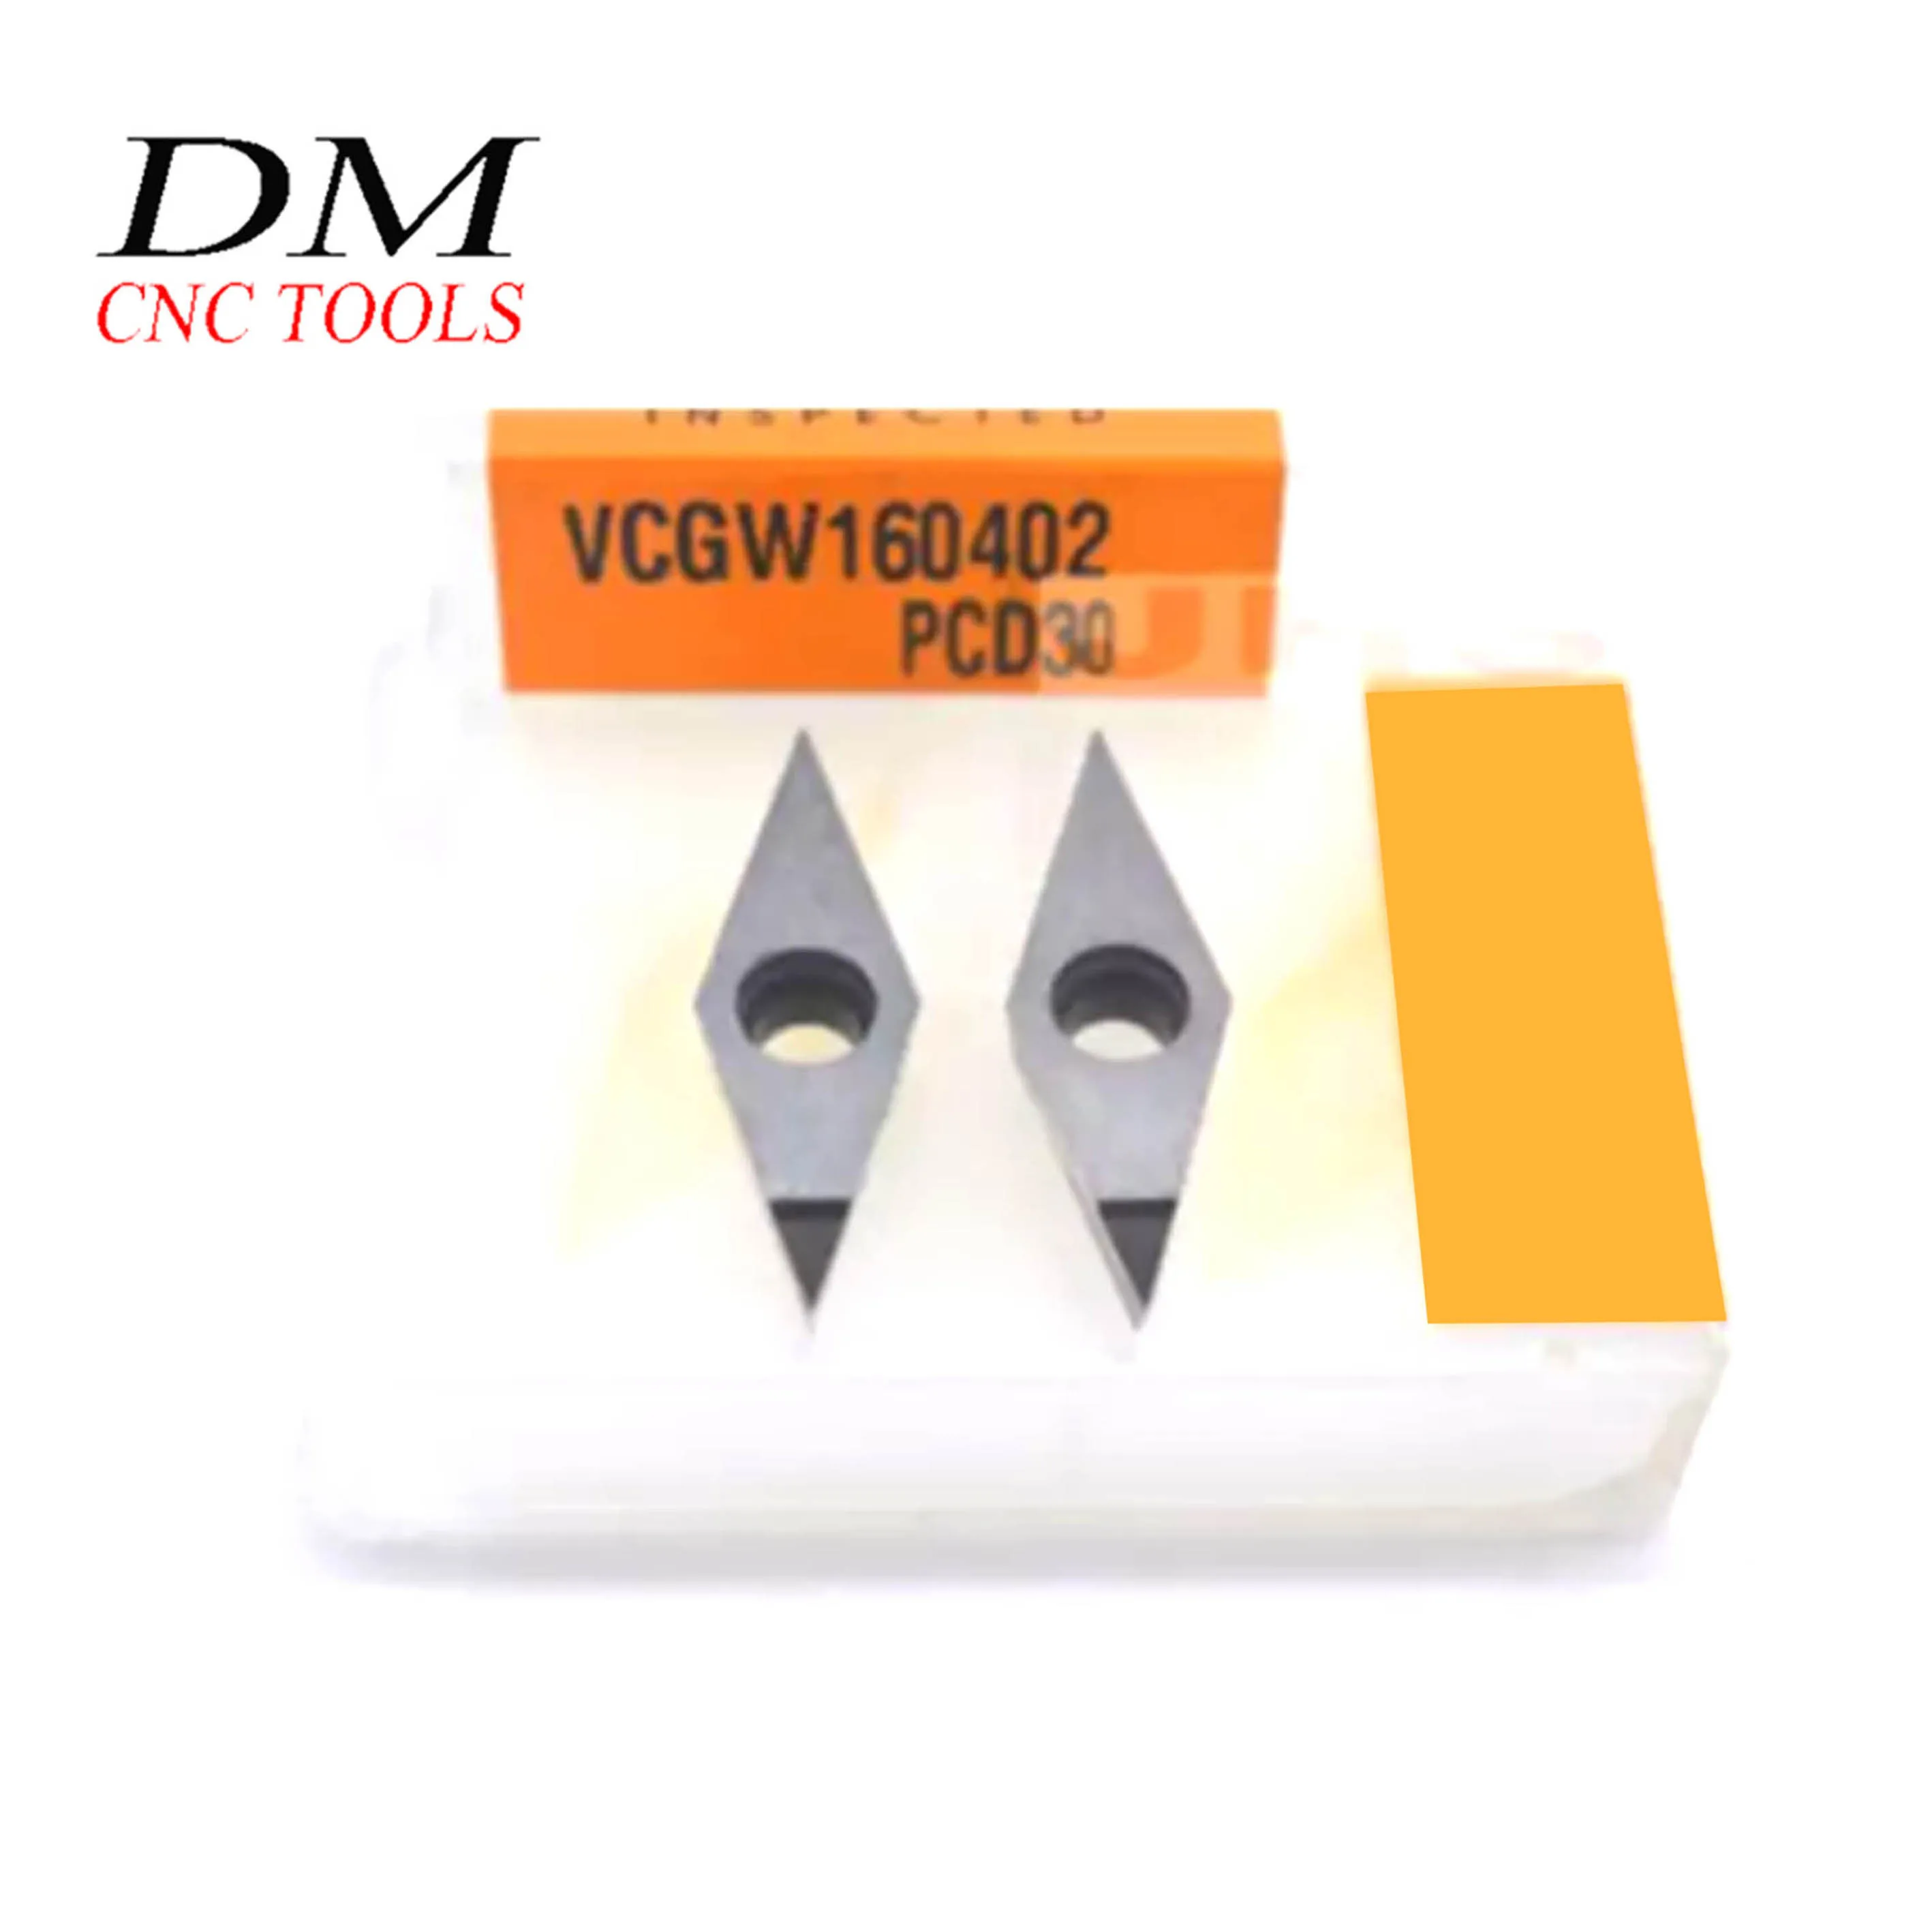 2 buc VCGW160402/VCGW160404/VCGW160408 PCD30 de Înaltă precizie Diamond CNC introduce lama